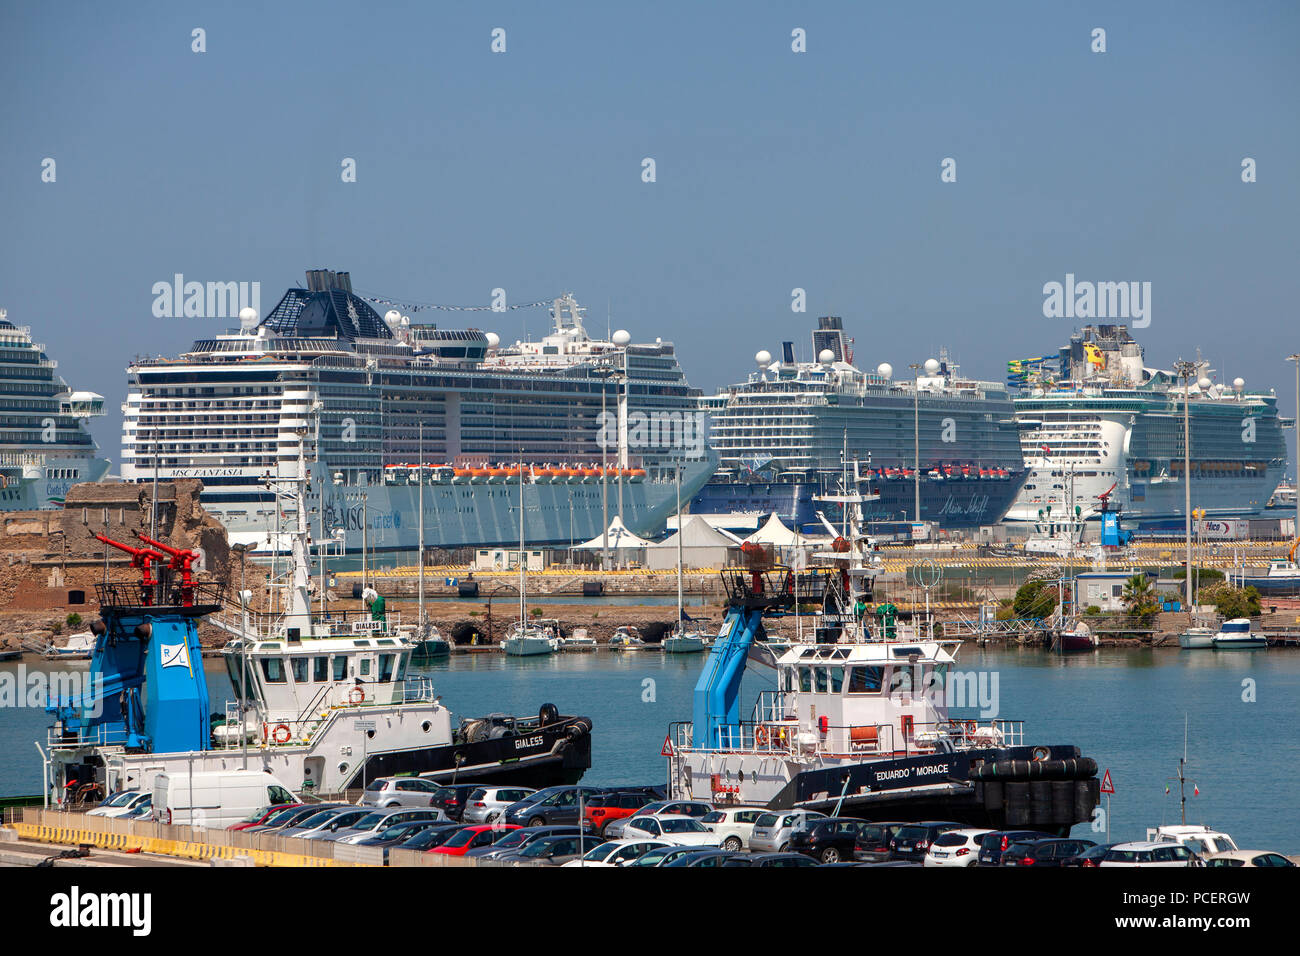 Die TUI Mein Schiff 6, MSC Fantasia, Costa Diadema und Royal Caribbean Unabhängigkeit der Meere Kreuzfahrtschiffe im Hafen von Civitavecchia in Italien angedockt Stockfoto